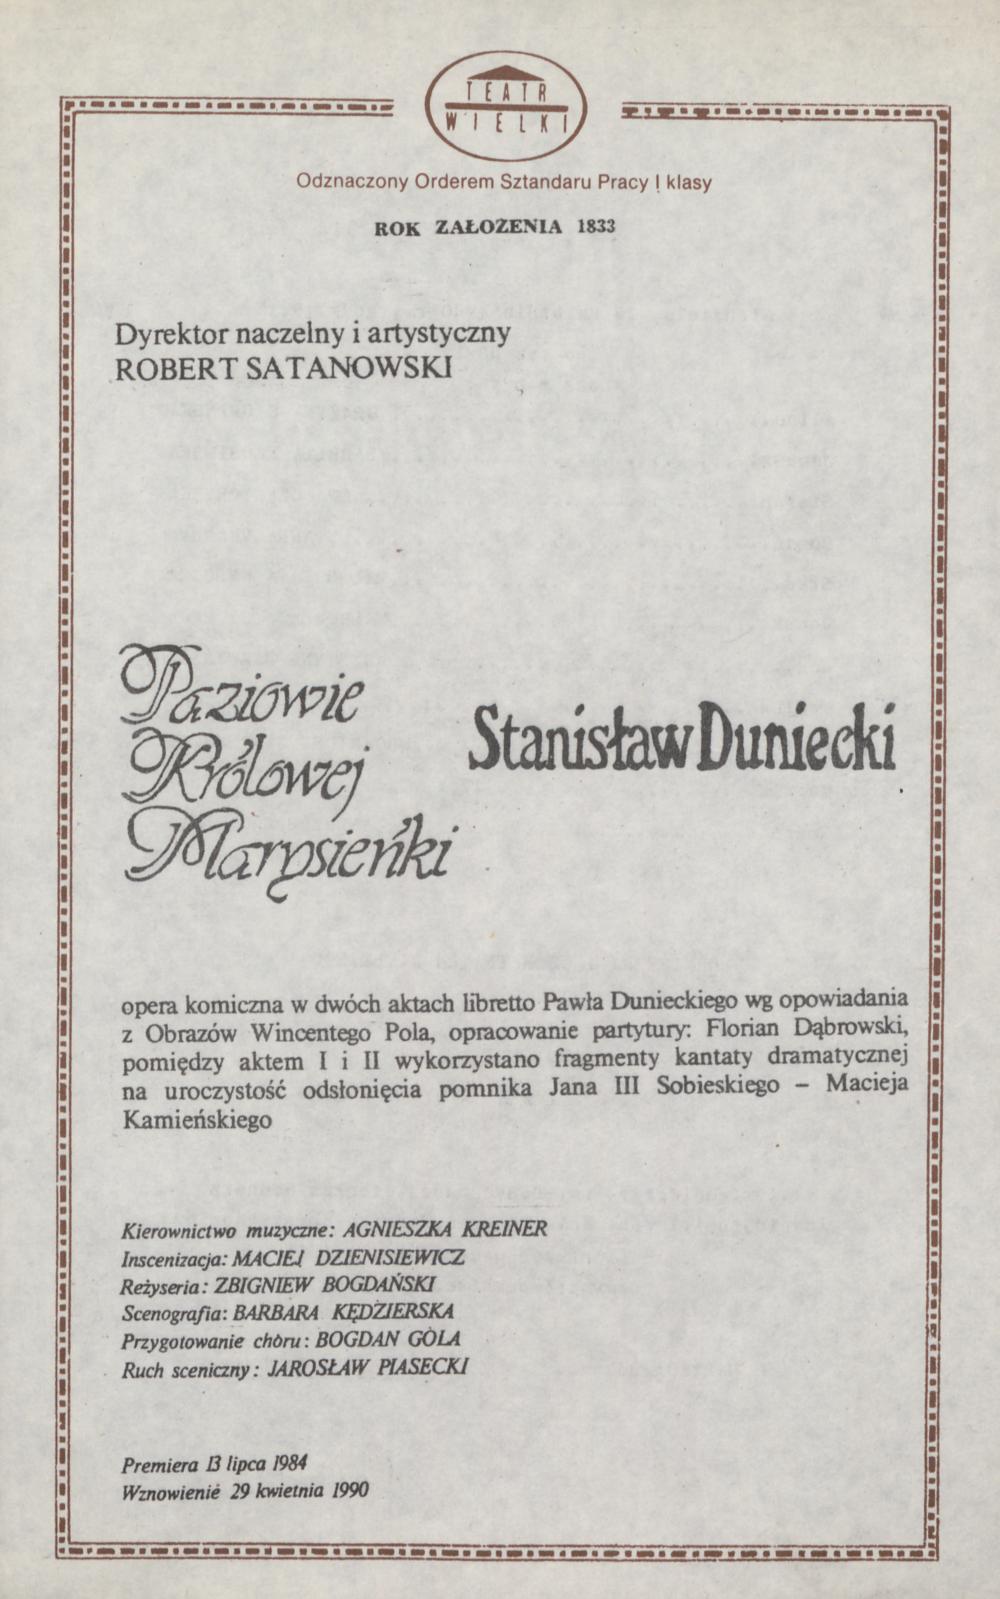 Wkładka Obsadowa „Paziowie Królowej Marysieńki” Stanisław Duniecki 29-04-1990, Wznowienie